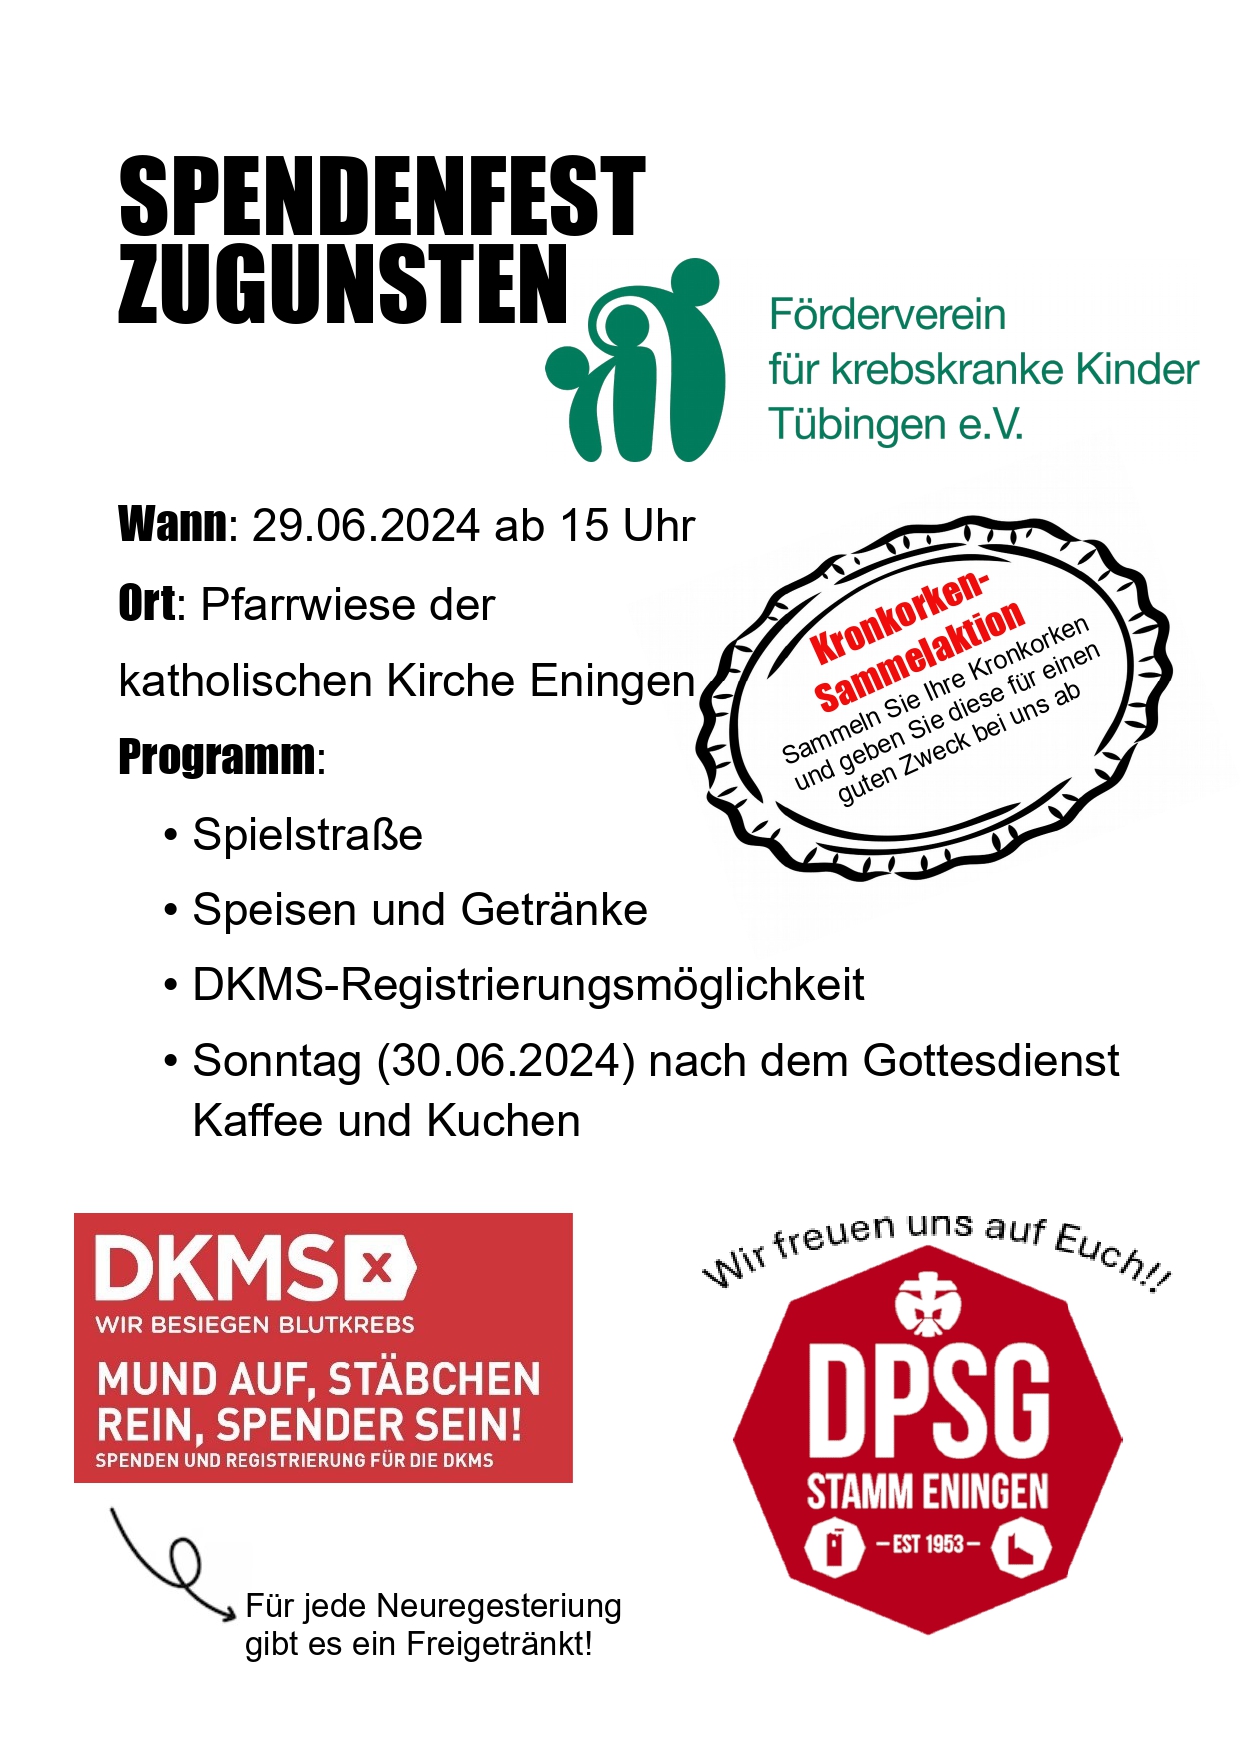 Mehr über den Artikel erfahren Spendenfest für den Förderverein für krebskranke Kinder Tübingen e.V.